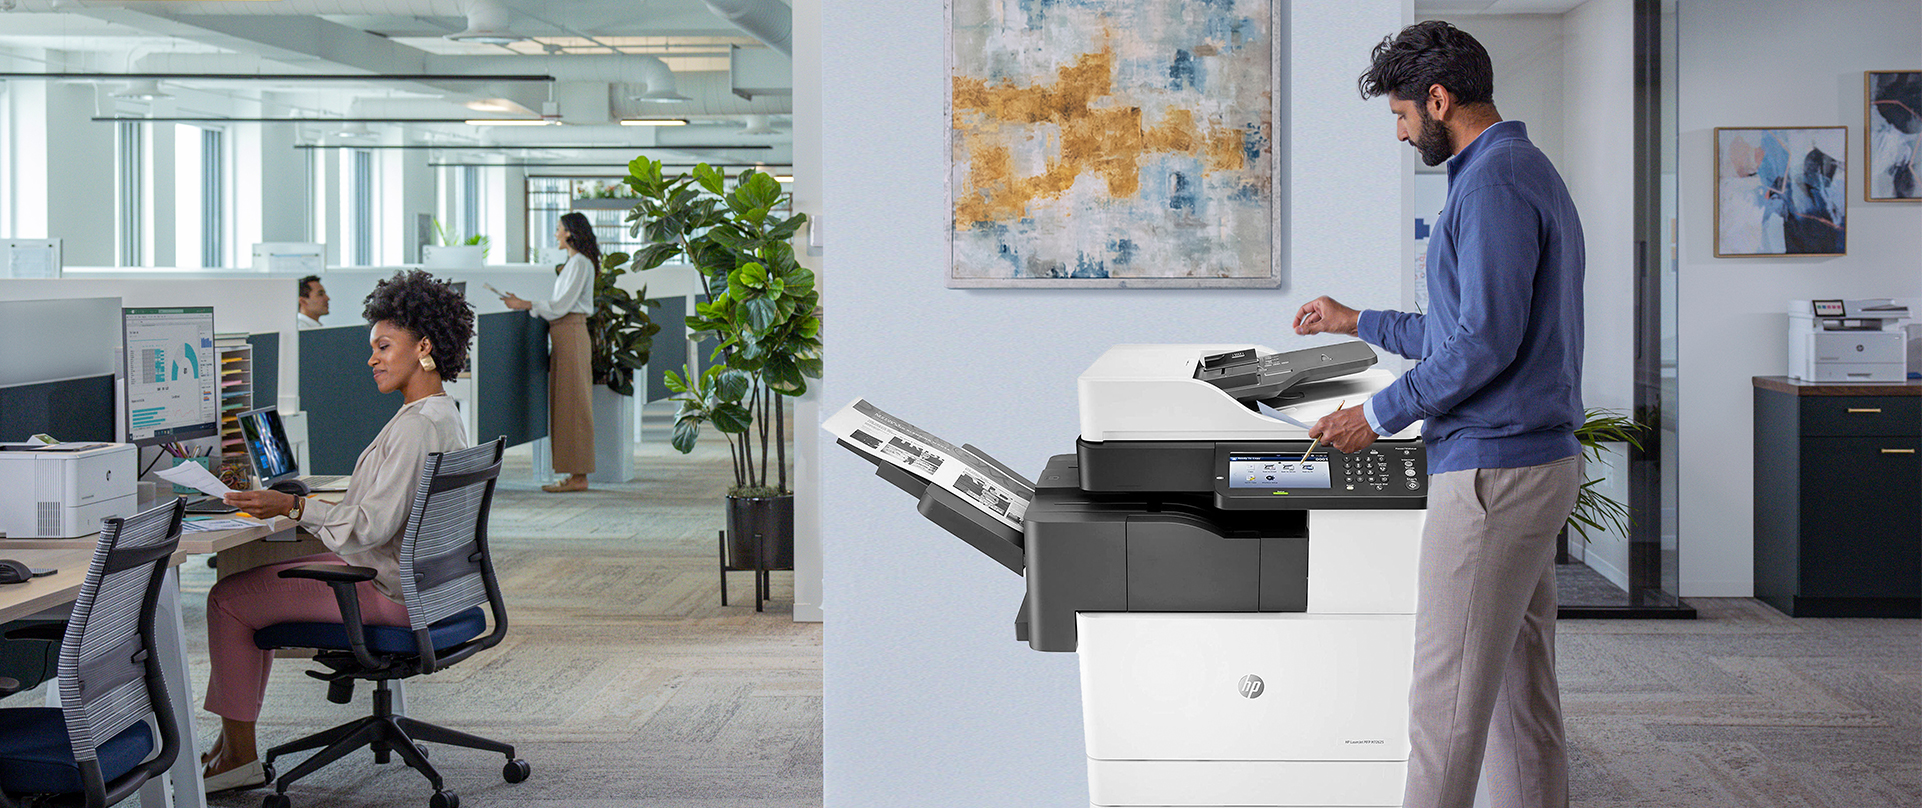 Thiết bị máy in/photocopy HP được cho thuê tại Chính Nhân đem lại chất lượng in tốt nhất cho doanh nghiệp cùng chi phí đầu tư, vận hành phải chăng, đi kèm những chương trình tư vấn, hỗ trợ khách hàng tốt nhất.